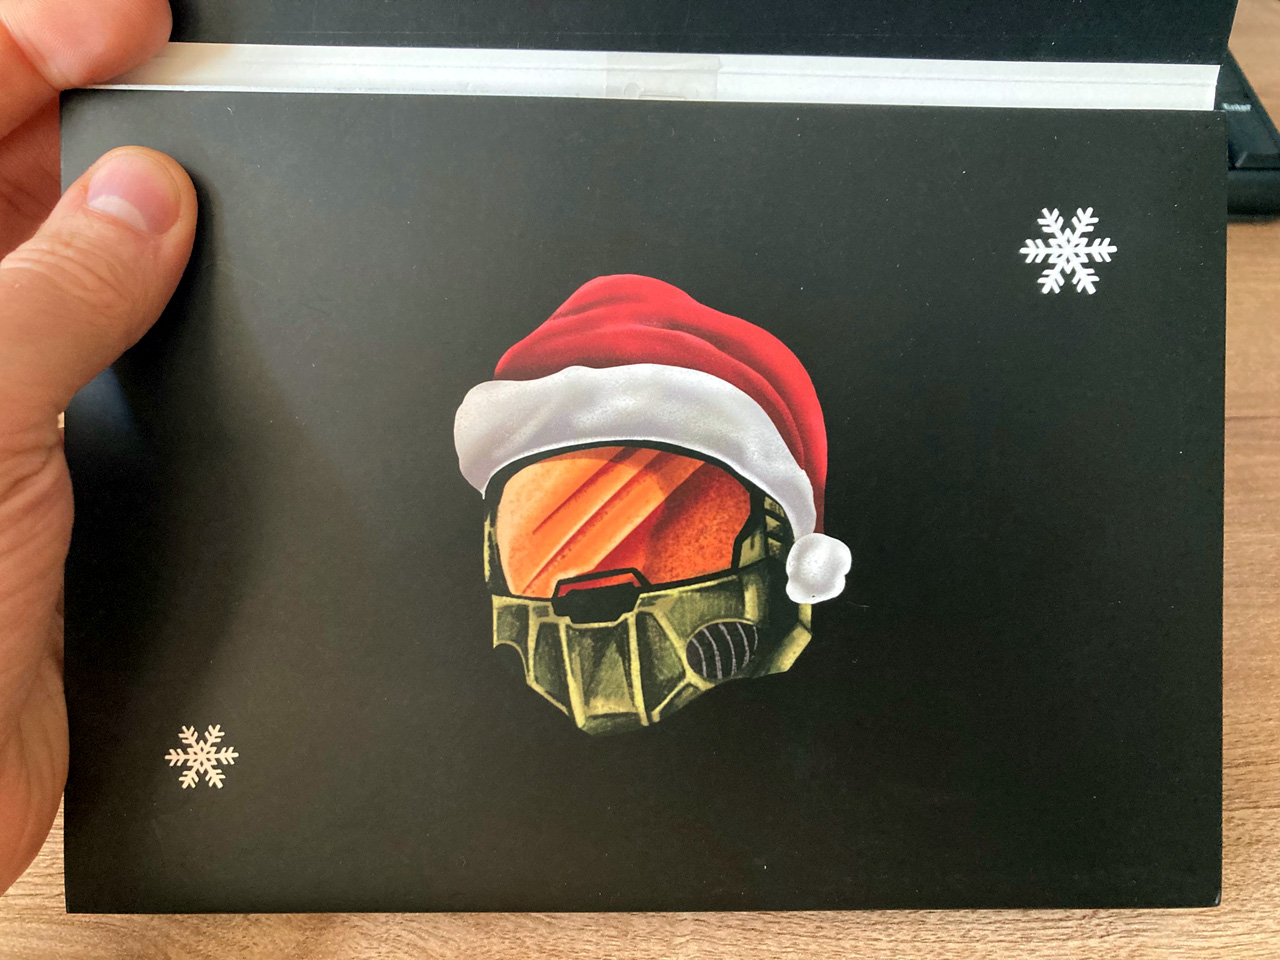 Foto einer Xbox-Weihnachtsgrußkarte mit dem Kopf des Master Chief mit Zipfelmütze.